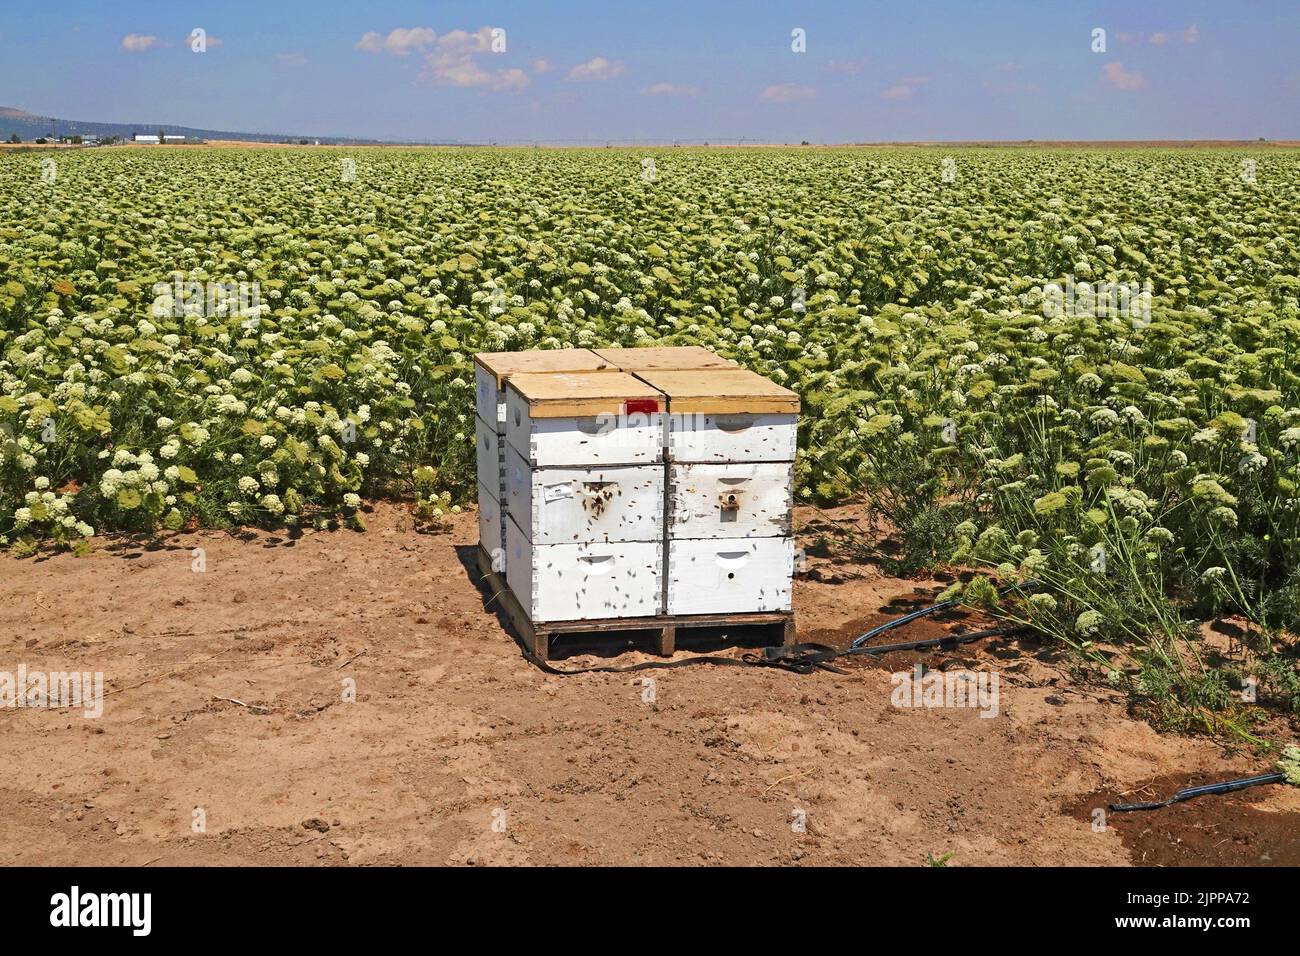 Una colmena activa con abejas europeas de miel cerca de un gran campo de semillas de zanahoria, siendo cultivada cerca de la pequeña ciudad de Culver, Oregon. La semilla de zanahoria se utiliza en la alimentación animal. Foto de stock